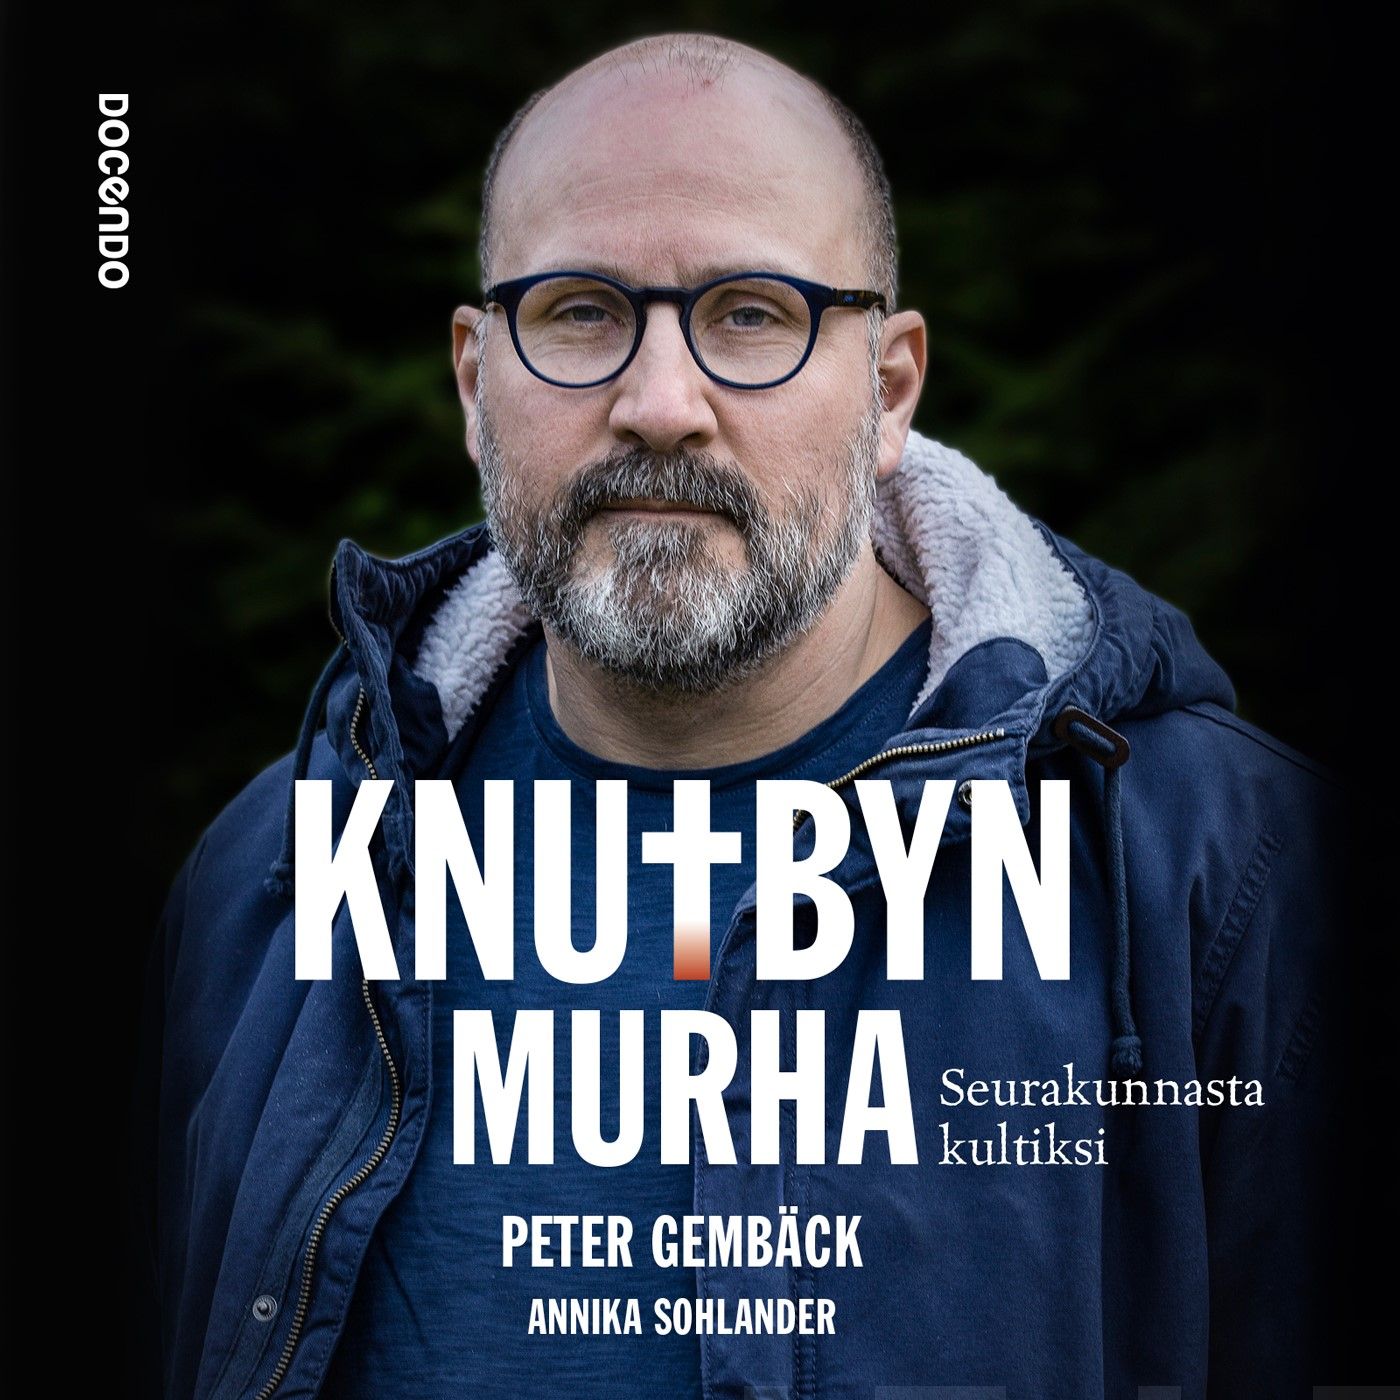 Gembäck, Peter - Knutbyn murha: Seurakunnasta kultiksi, äänikirja